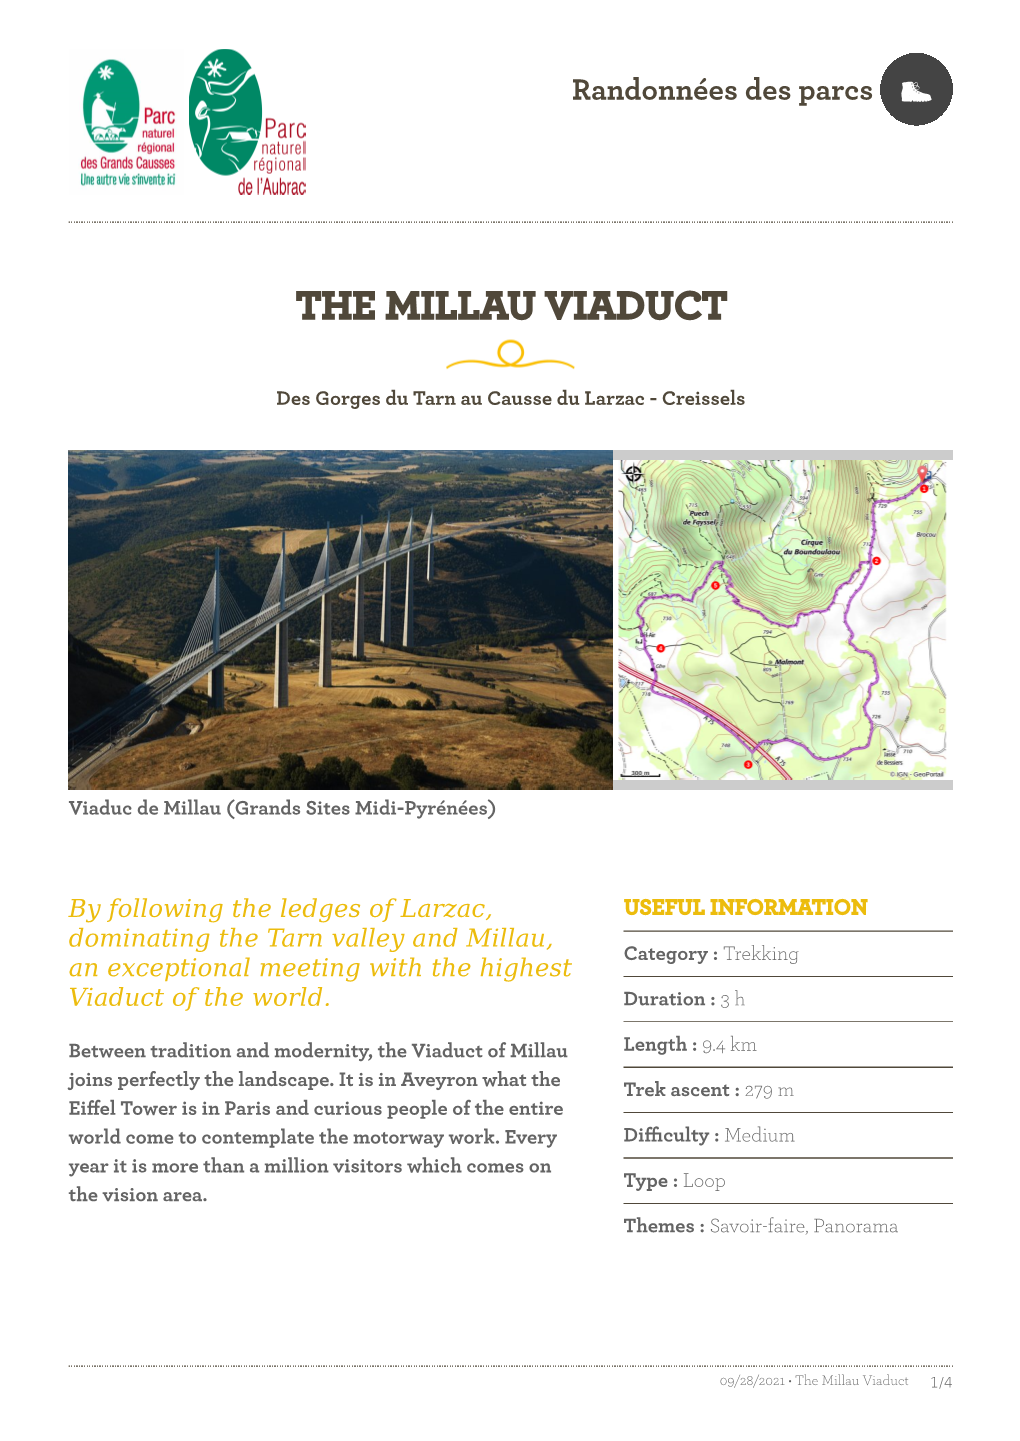 The Millau Viaduct